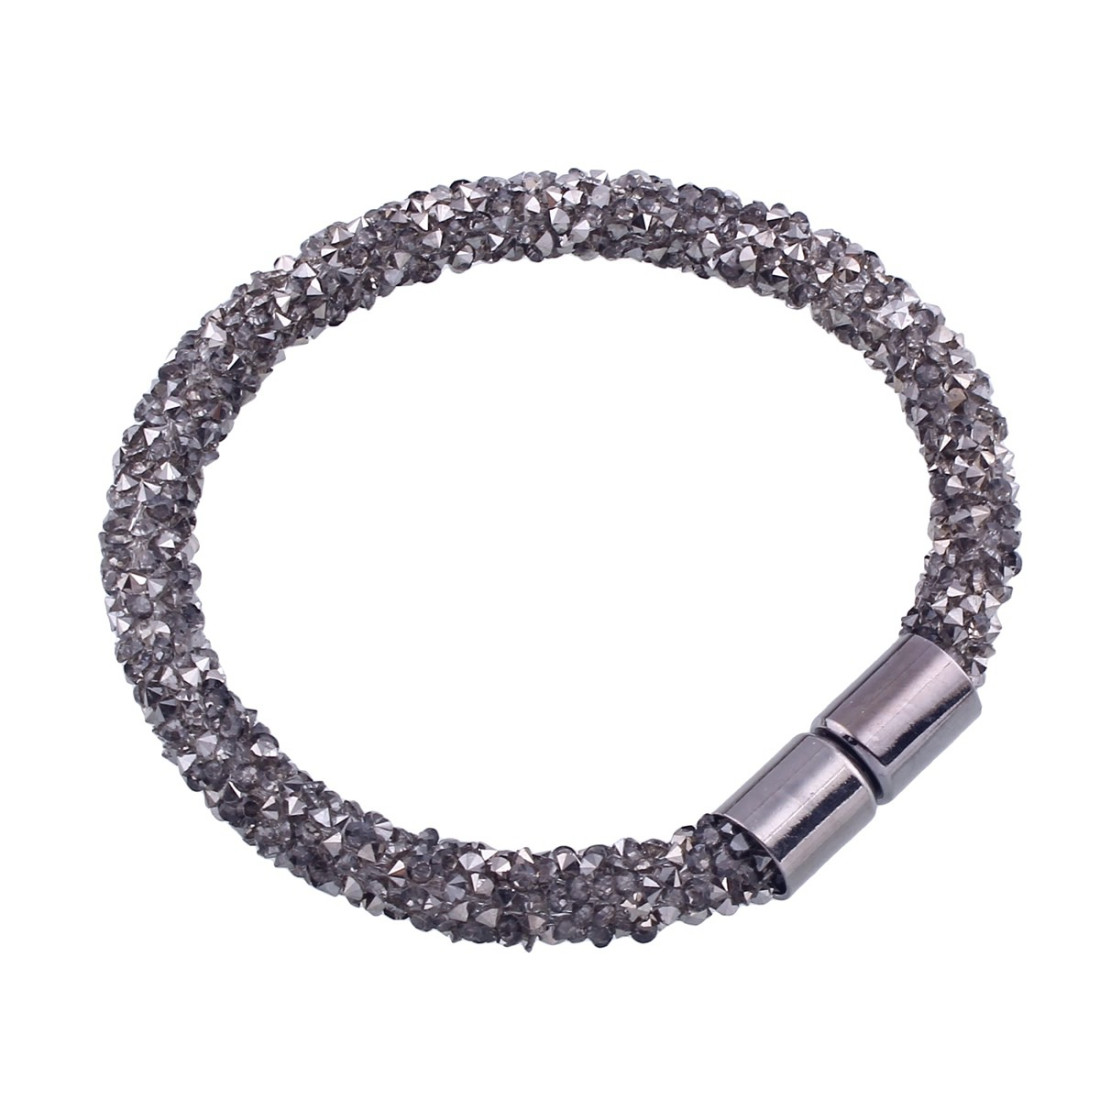 Bracelet femme magnétique avec cristaux strass gris fonçé incrusté - 19cm